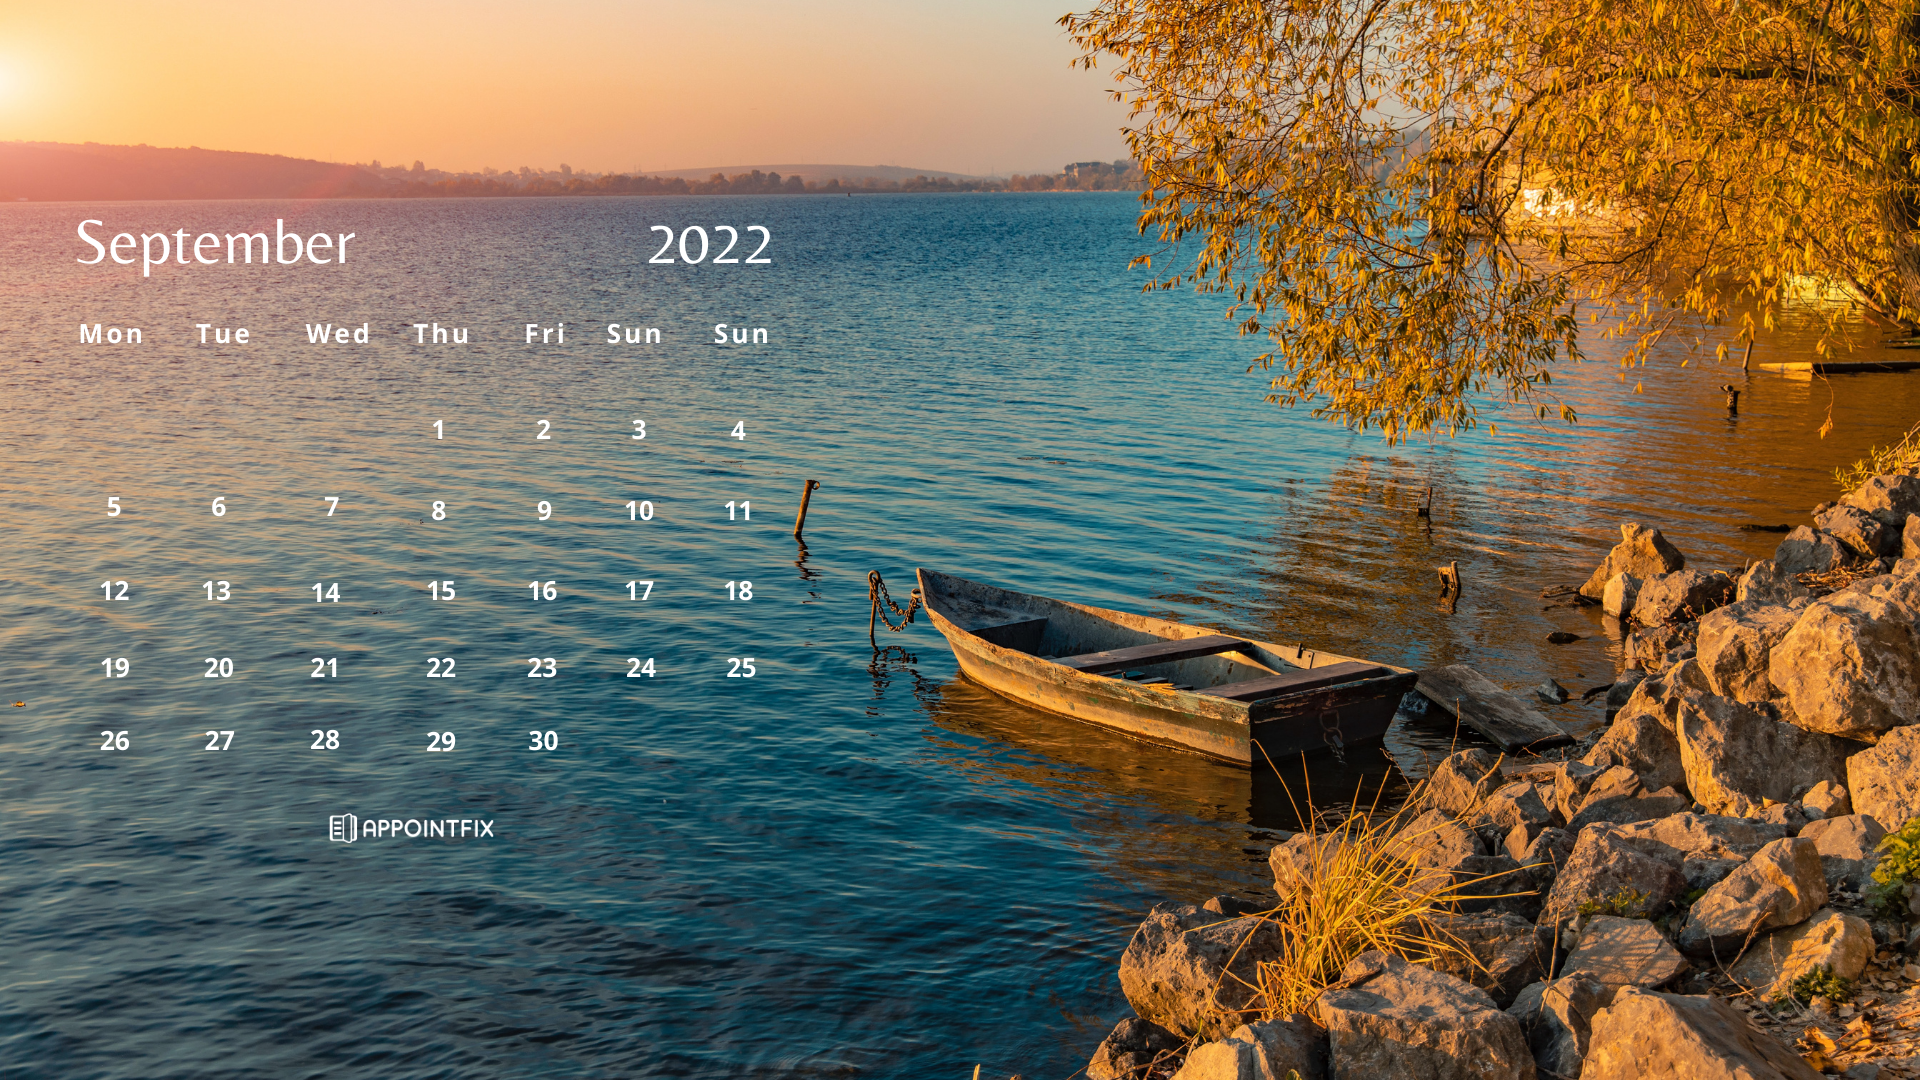 Free September 2022 Wallpaper Calendars Desktop Mobile 1920x1080